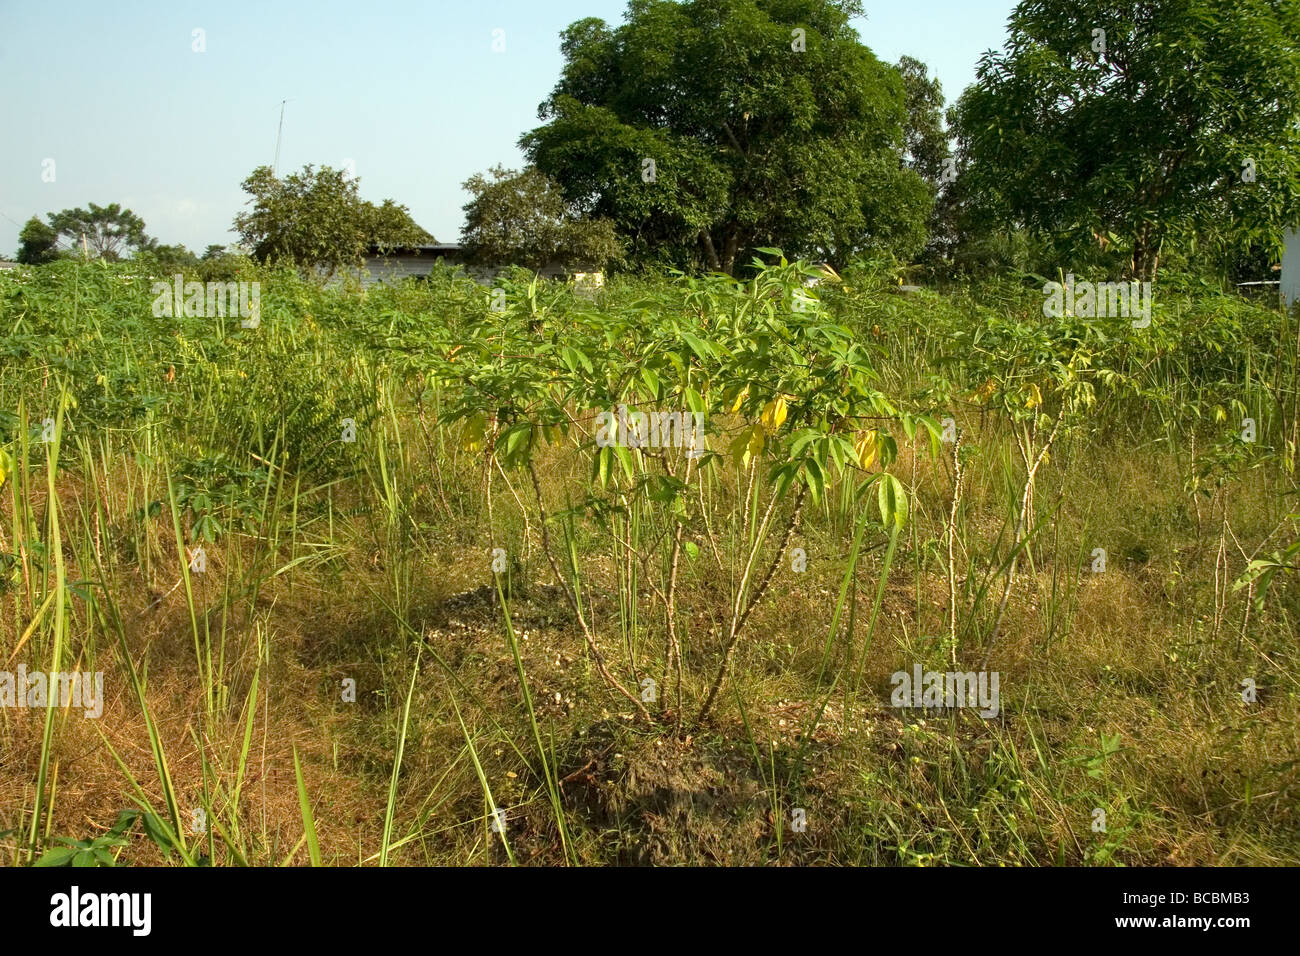 Récolte de manioc poussant dans village de Bonendale près de Douala Cameroun Afrique de l'Ouest Banque D'Images